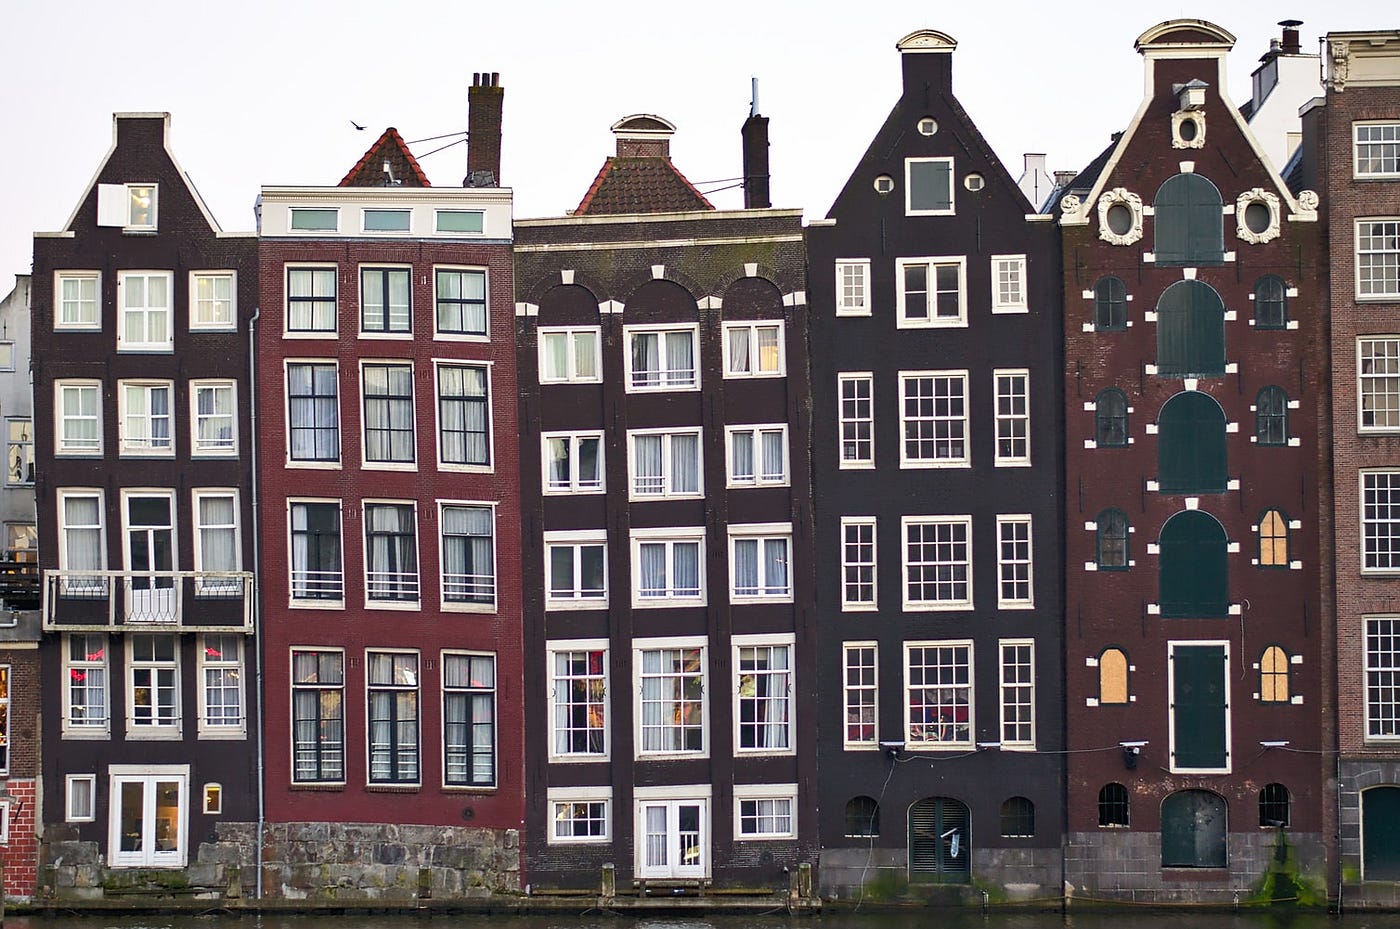 Hollanda'da Ev Bulmak ve Kiralar. Herkese tekrar merhaba ben çok iyiyim… |  by Fatos Menevseoglu | Medium